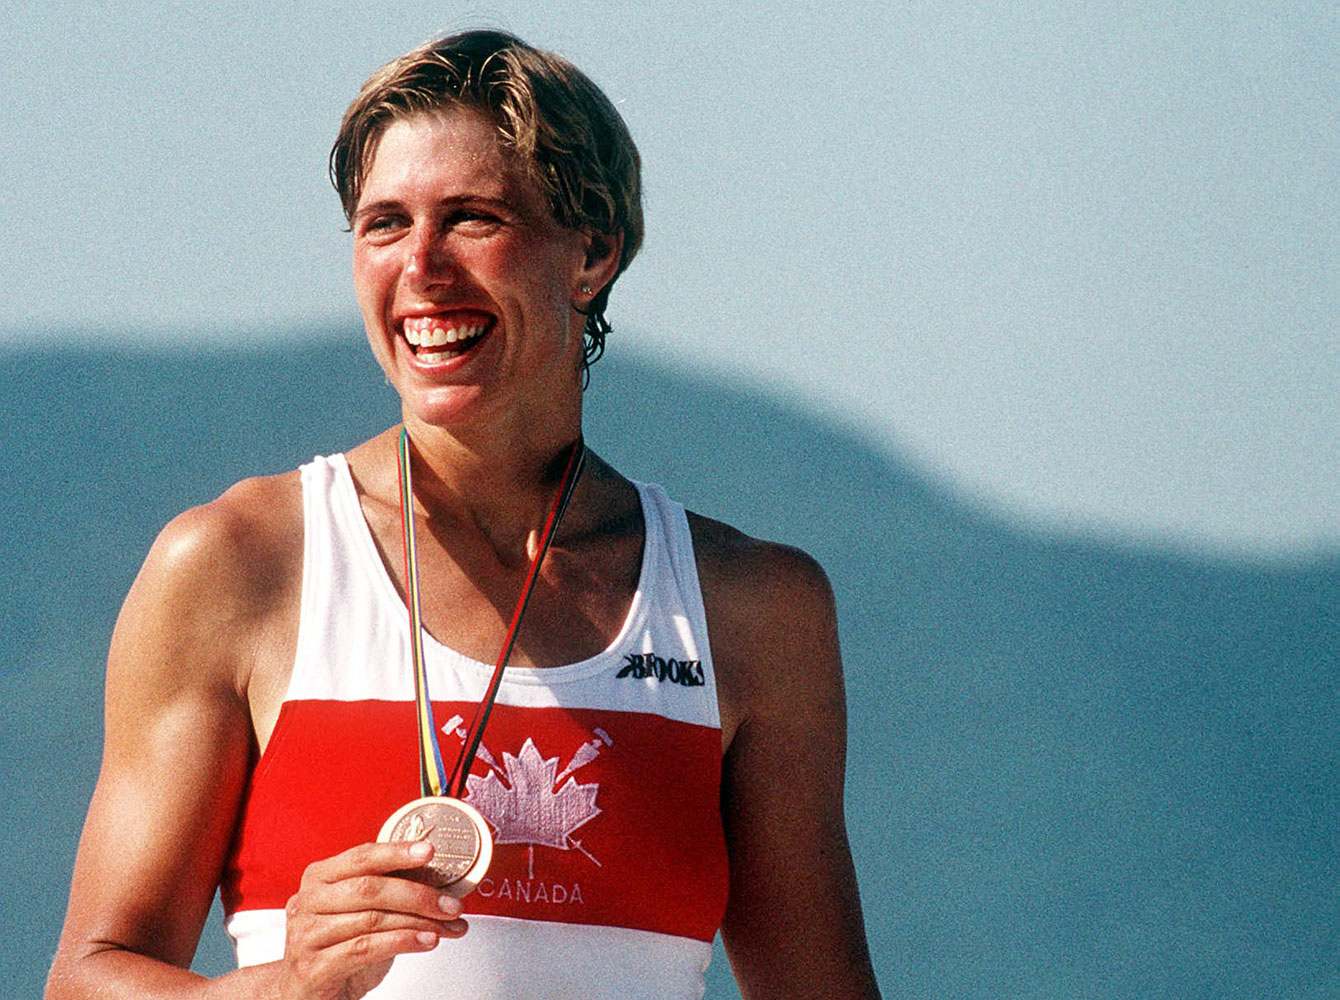 Silken Laumann after winning her Barcelona 1992 Olympic rowing bronze medal.